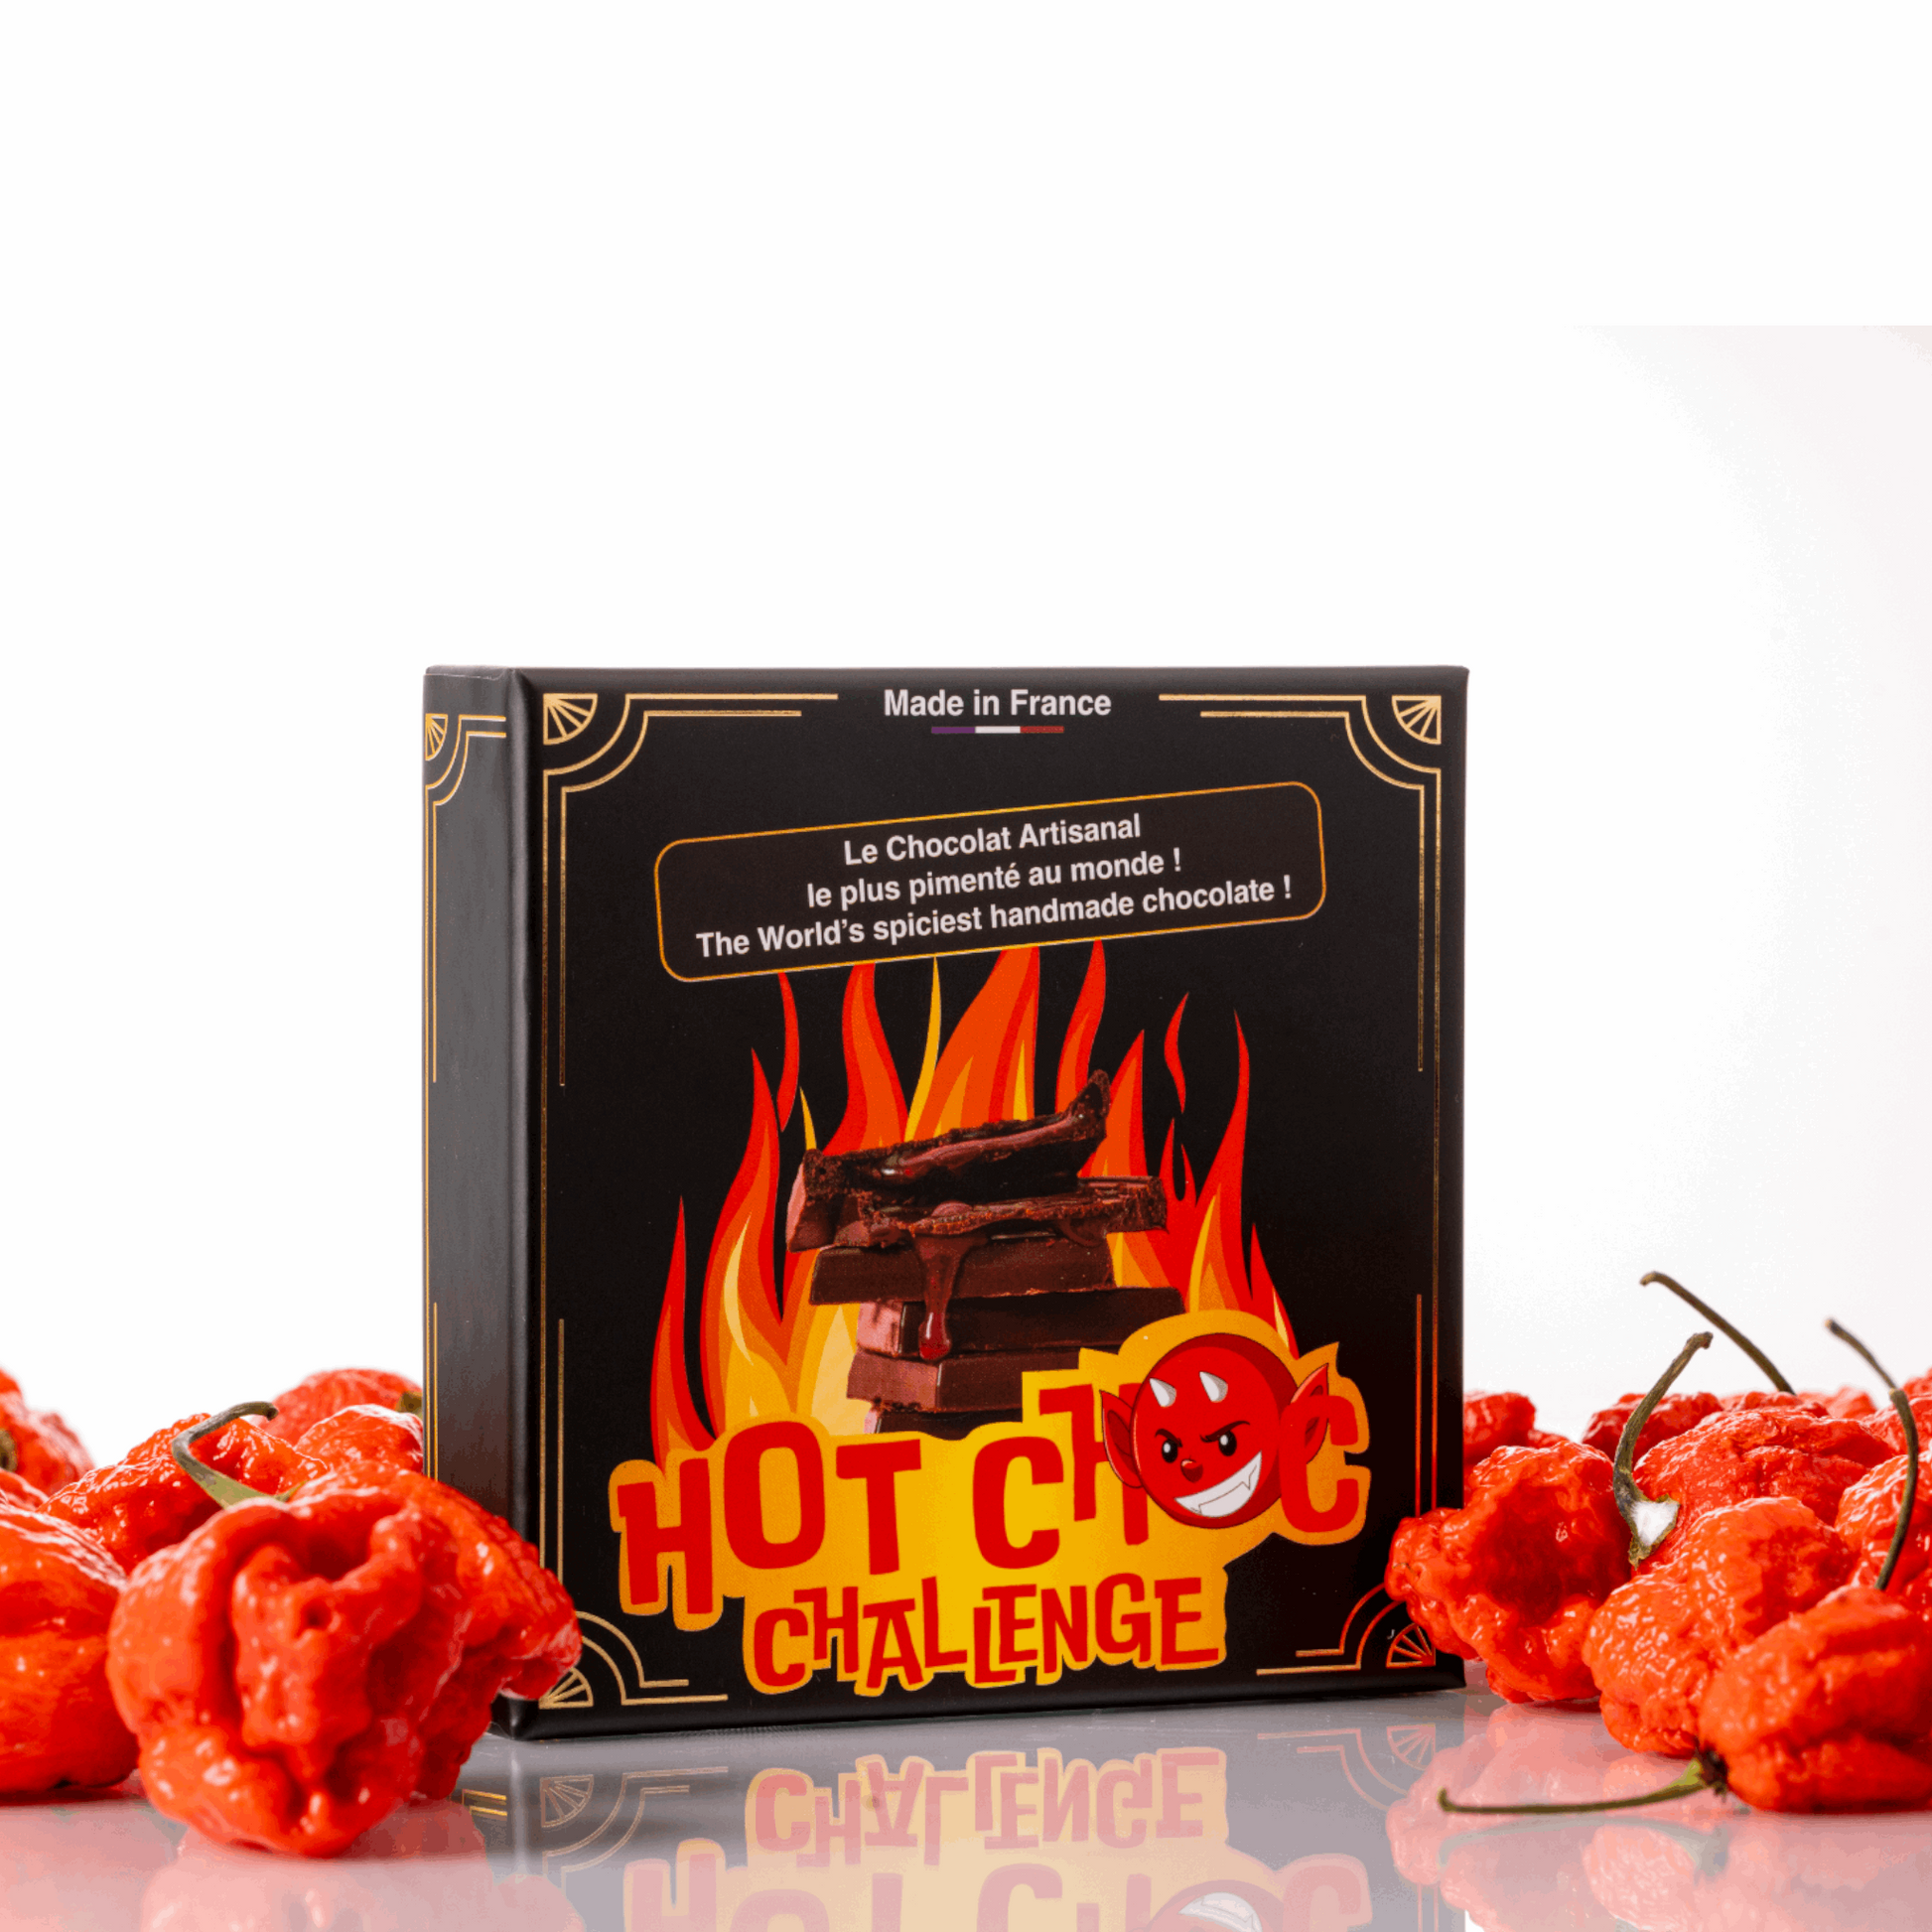 Hot Choc Challenge, le chocolat artisanal made in France le plus pimenté au monde